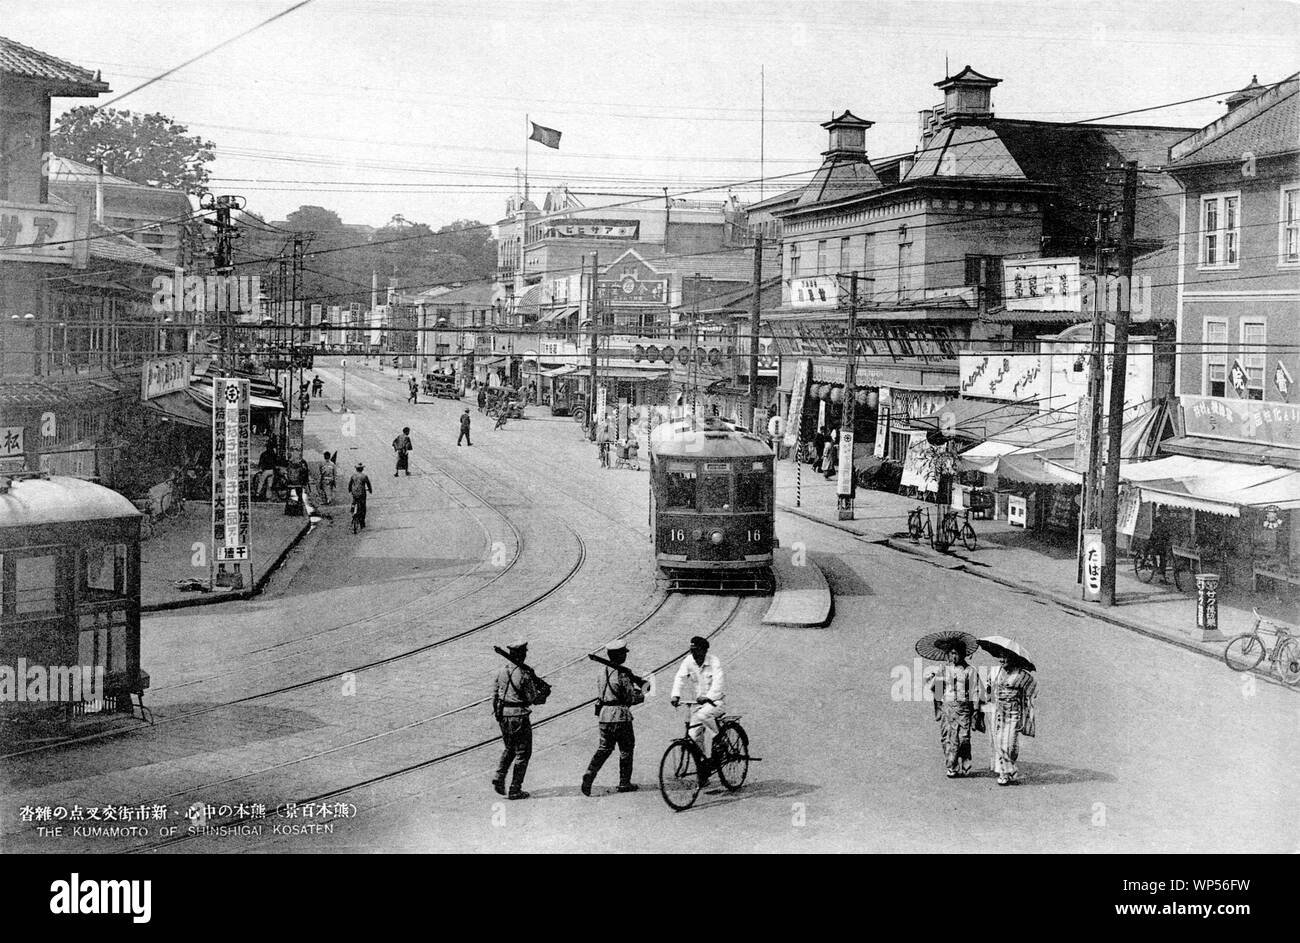 [1920s Japan - Japanische Strassenbahn in Kumamoto] - Straßenbahnen und einen Radfahrer auf Shinshigai Kreuzung im Zentrum der Stadt in der Präfektur Kumamoto Kumamoto. 20. jahrhundert alte Ansichtskarte. Stockfoto